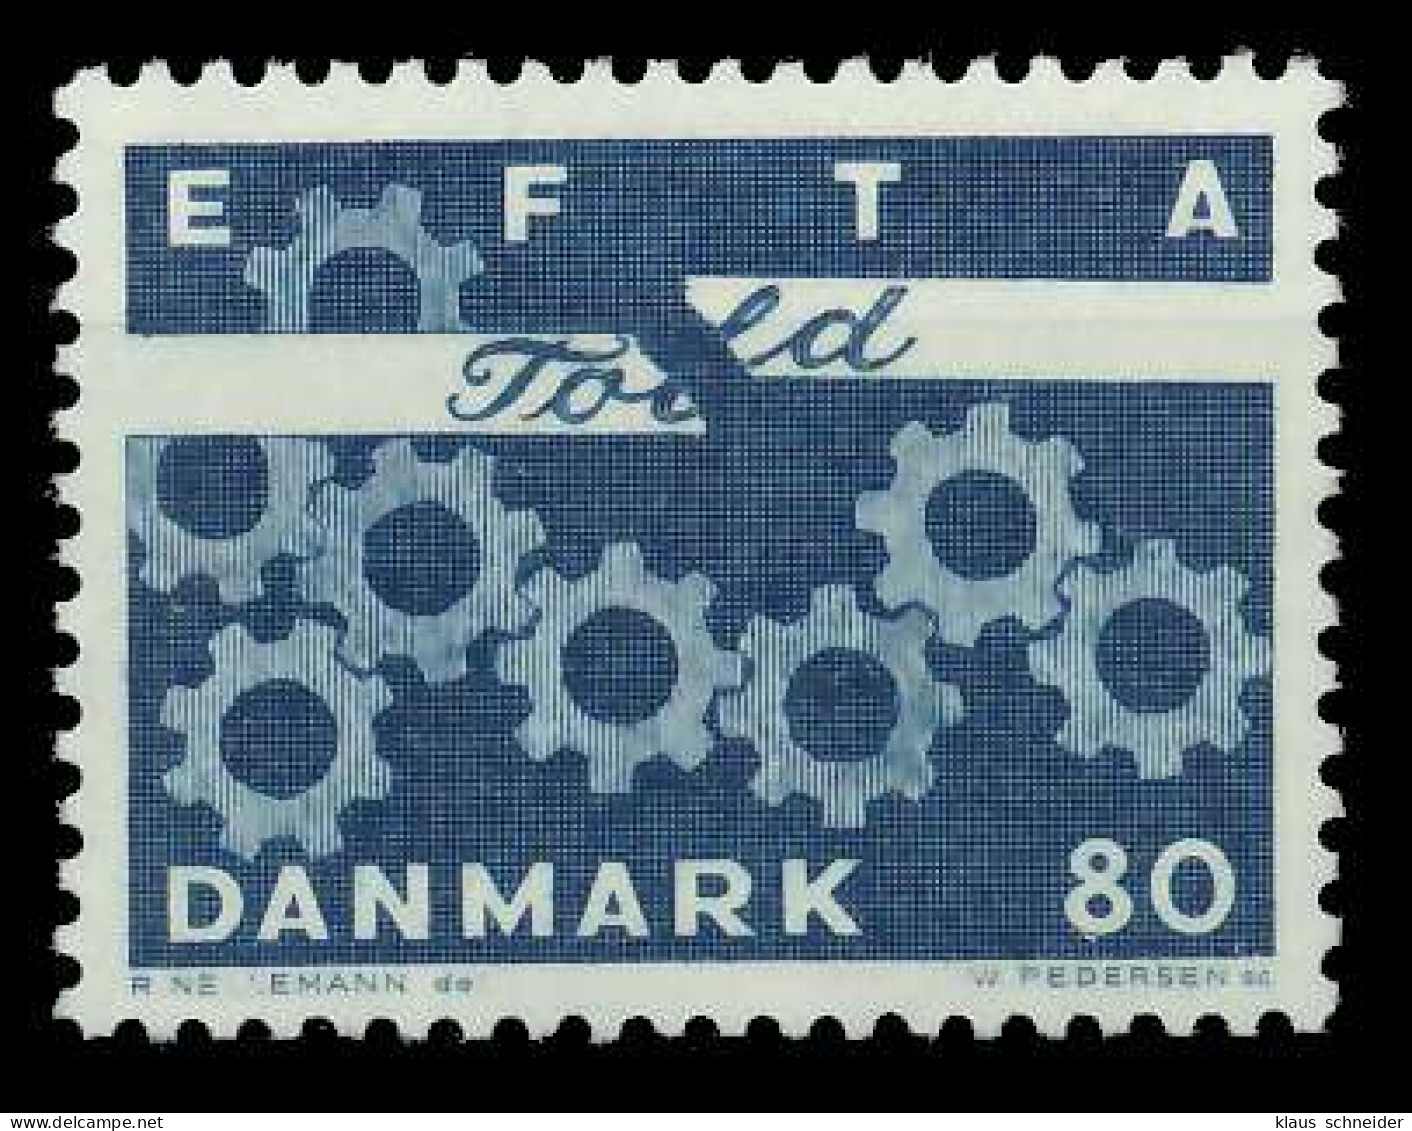 DÄNEMARK 1967 Nr 450x Postfrisch SAE9A36 - Neufs